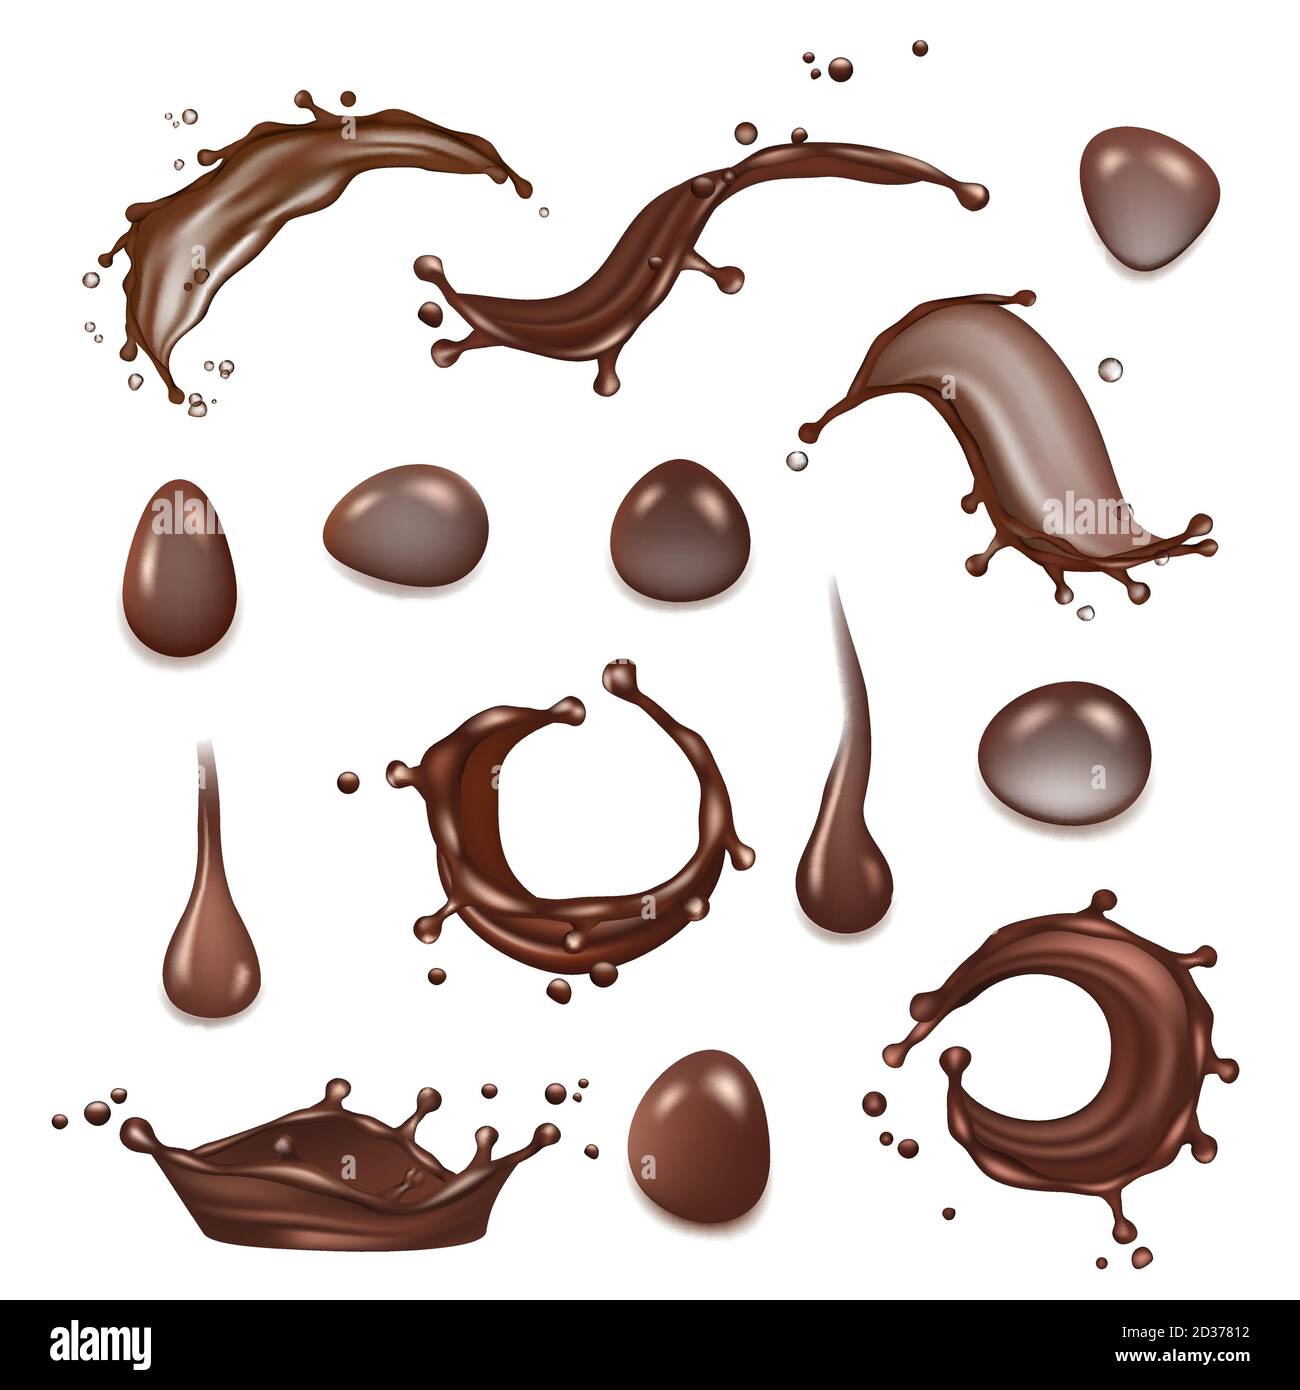 Kaffeespritzer. Braune Schokolade Milch Spritzer von heißen Getränken Dessert Vektor realistische Vorlage Stock Vektor